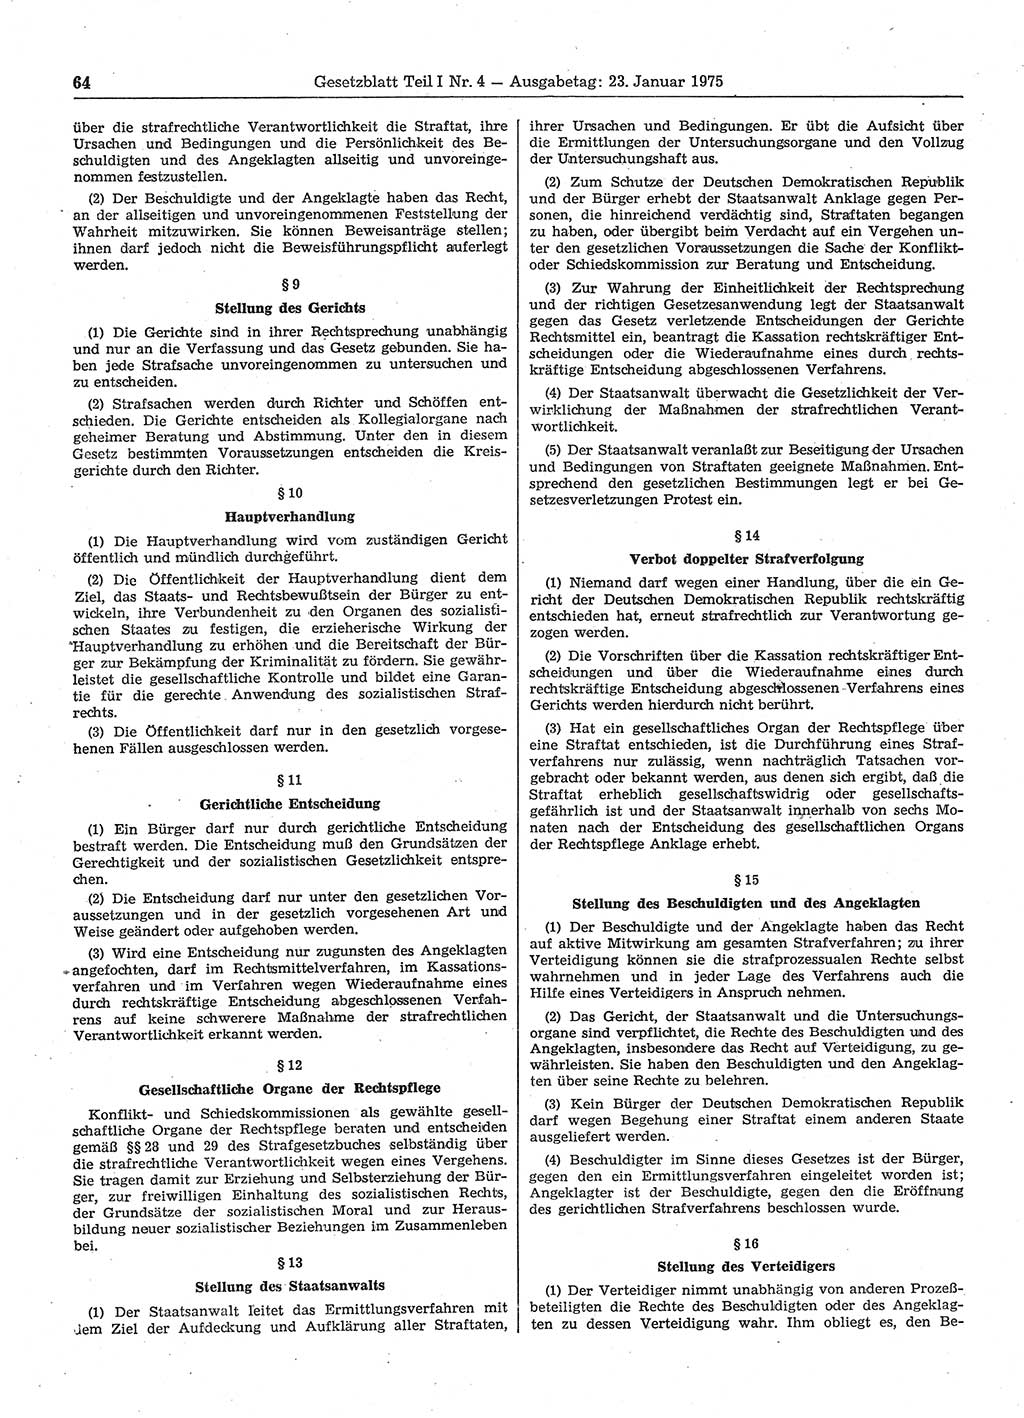 Gesetzblatt (GBl.) der Deutschen Demokratischen Republik (DDR) Teil Ⅰ 1975, Seite 64 (GBl. DDR Ⅰ 1975, S. 64)